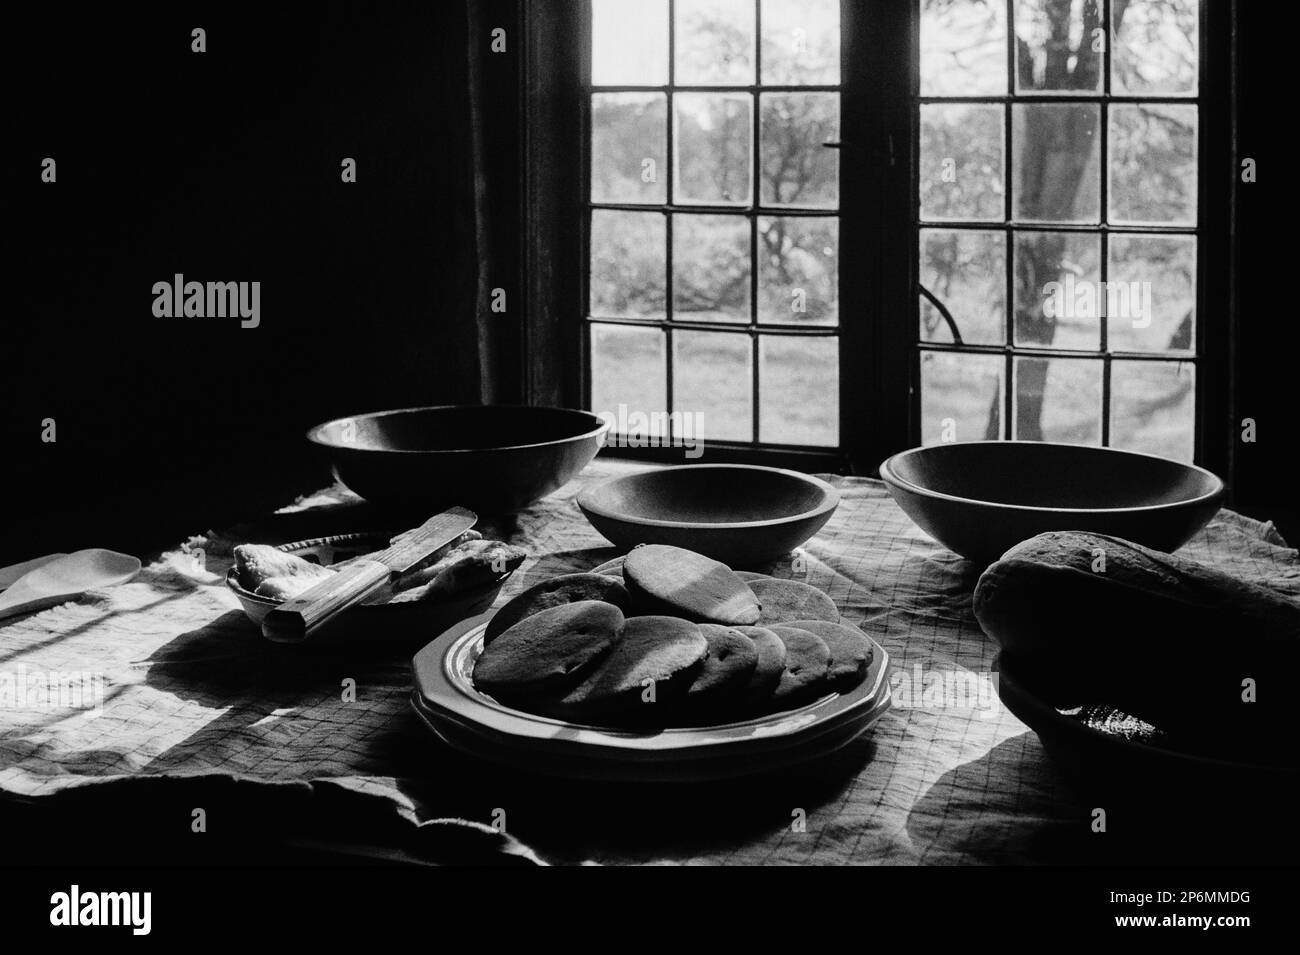 Teller mit frisch gebackenen Plätzchen und Brot, die während einer Nachstellung des Revolutionskriegs im Rebecca Nurse Homest auf einem Tisch vor einem Fenster ausgestellt wurden Stockfoto